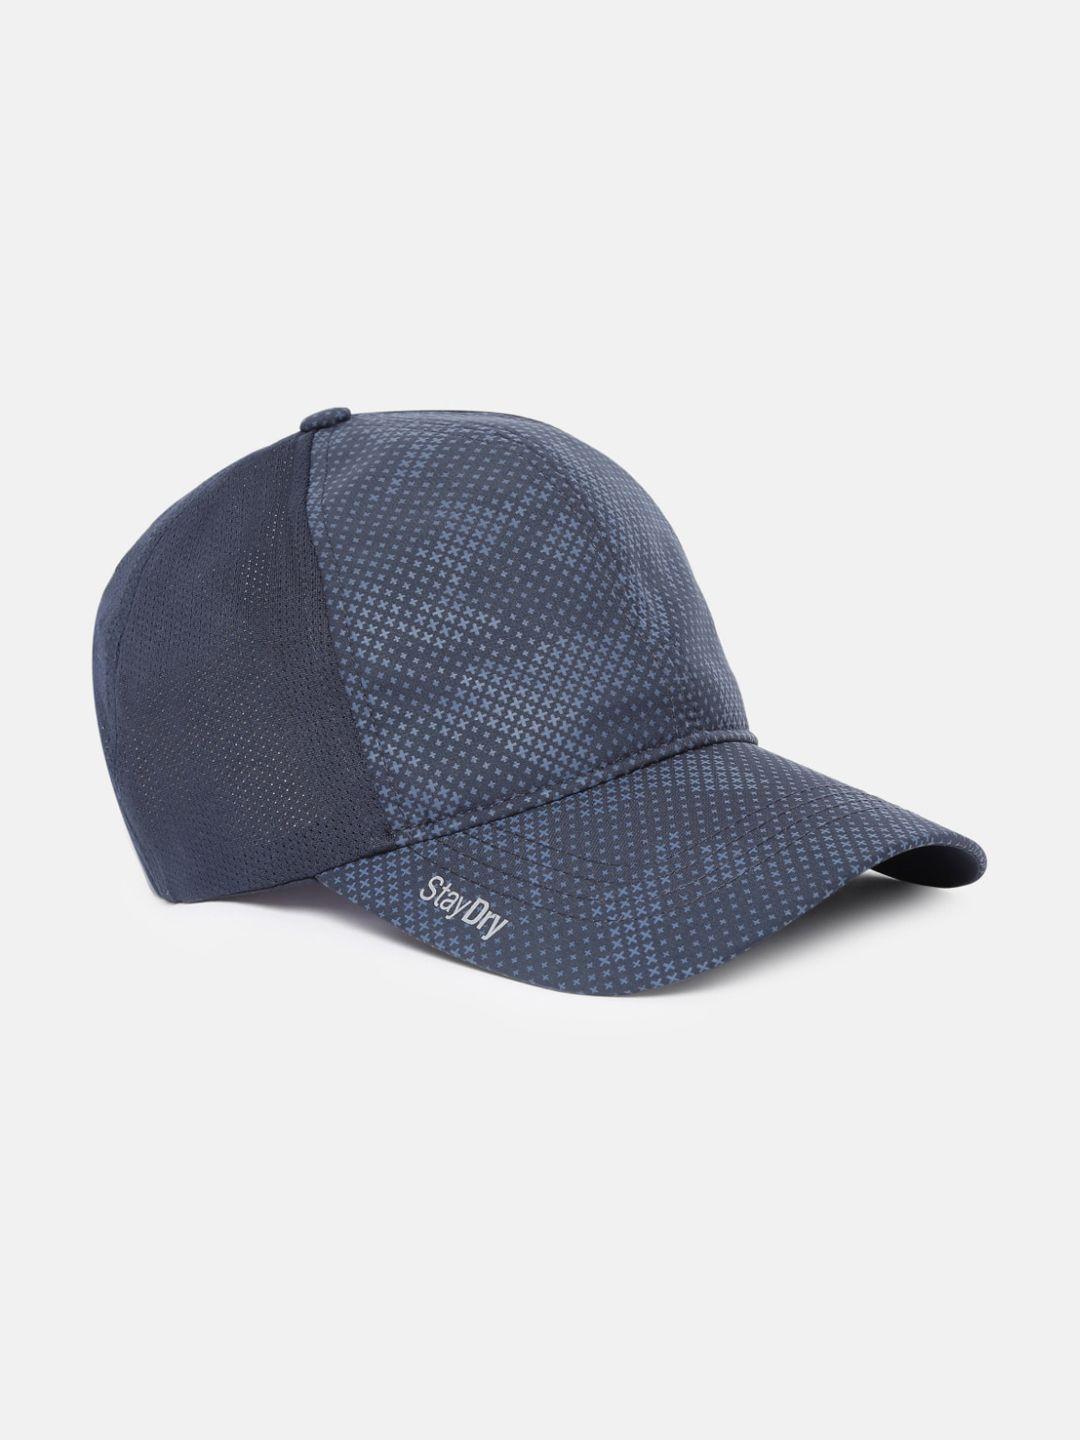 jockey men blue printed snapback cap